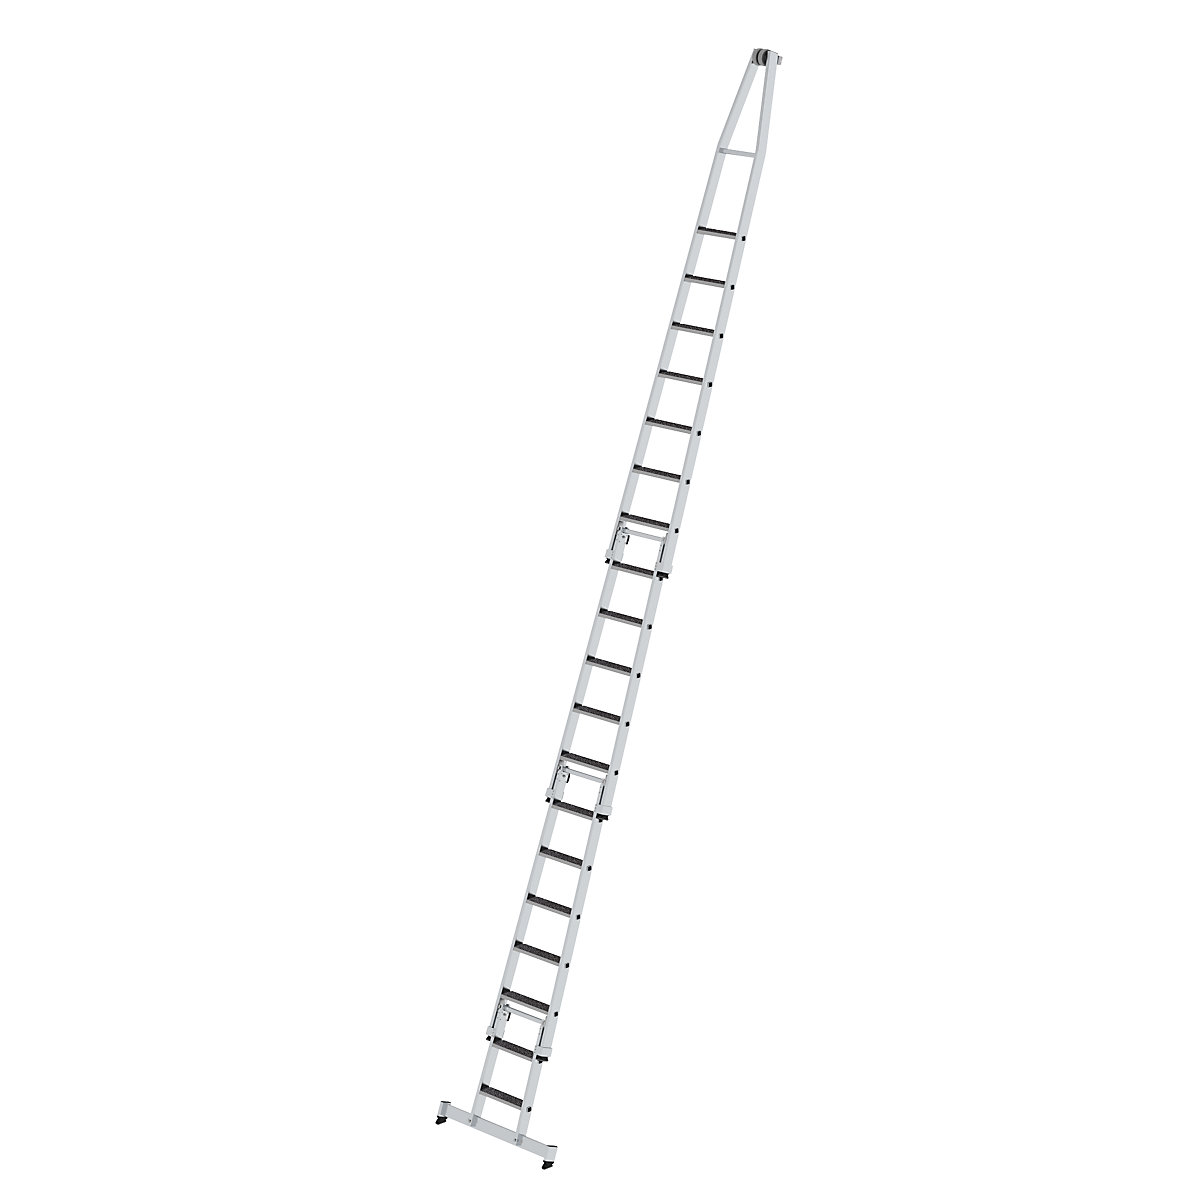 Escada para limpar vidros – MUNK, com apoio para os pés, 4 peças, 19 degraus-3